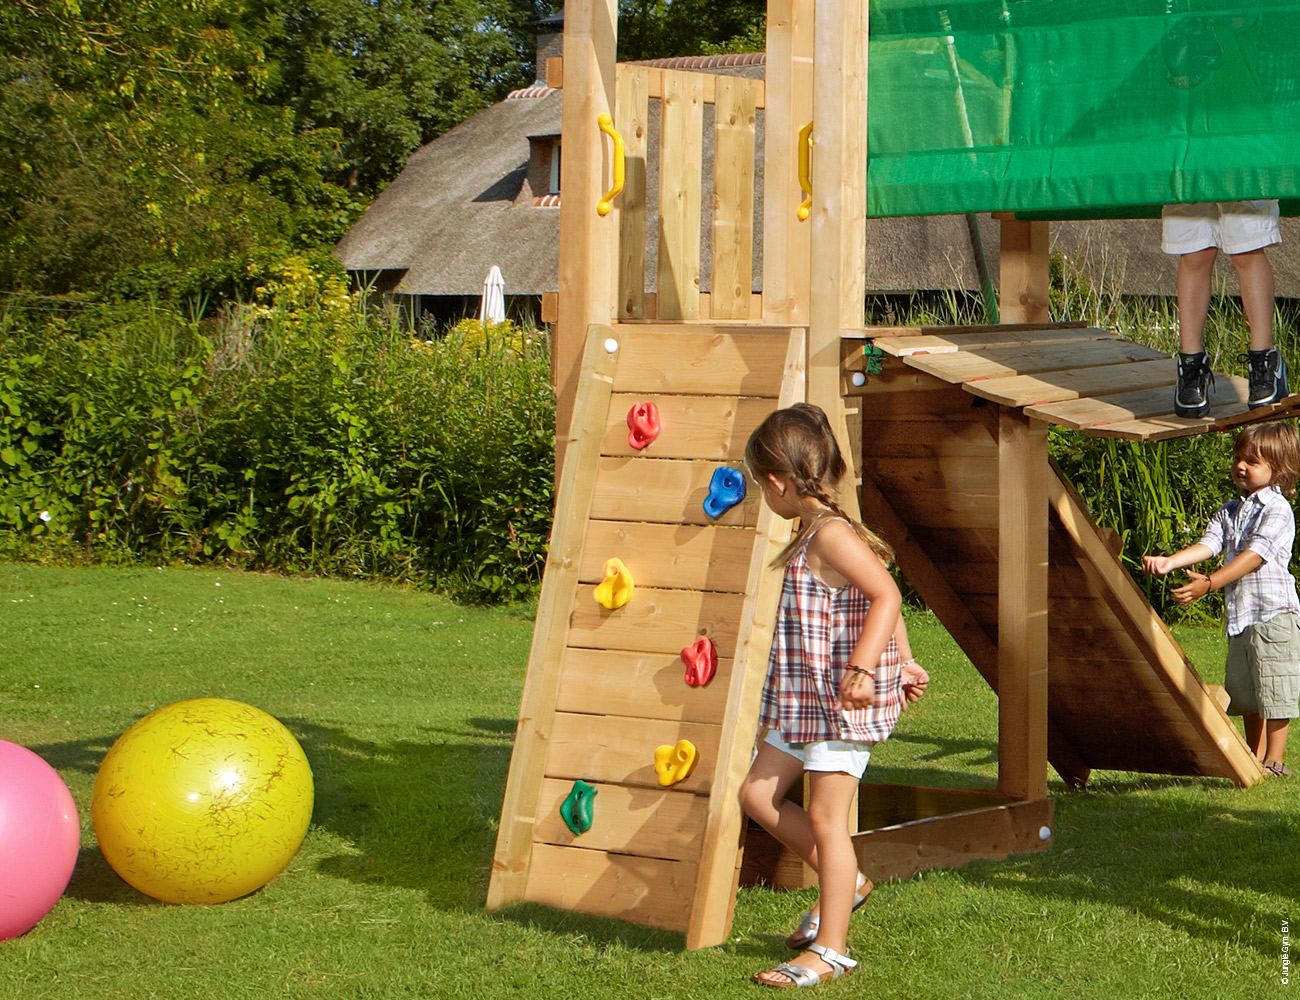 Přídavný modul Bridge Module k dětským hřištím Jungle Gym